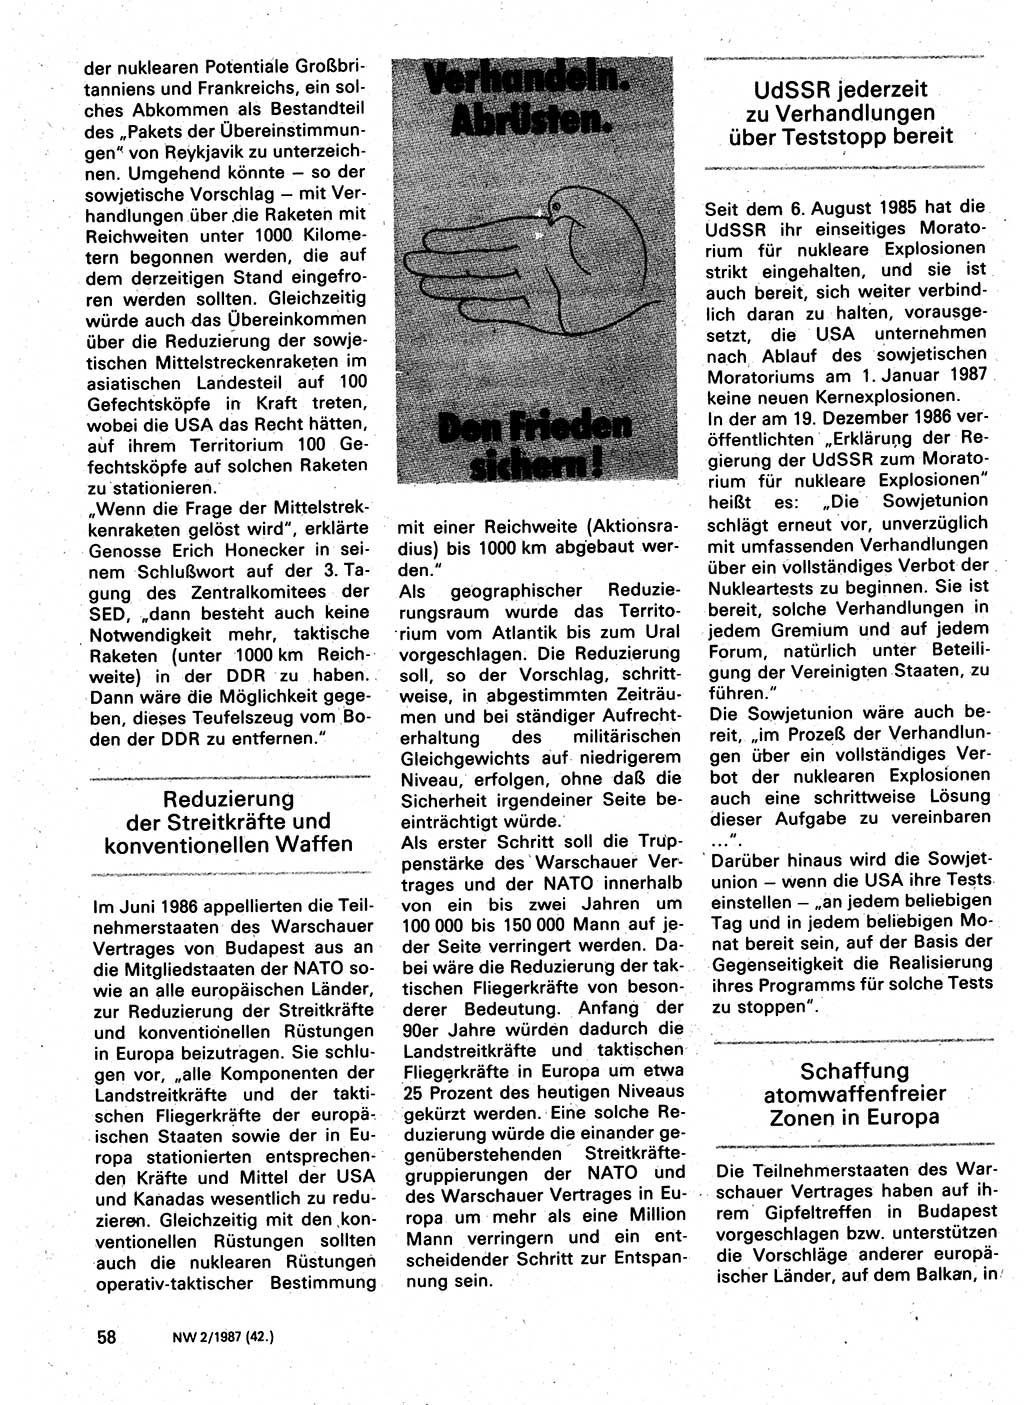 Neuer Weg (NW), Organ des Zentralkomitees (ZK) der SED (Sozialistische Einheitspartei Deutschlands) für Fragen des Parteilebens, 42. Jahrgang [Deutsche Demokratische Republik (DDR)] 1987, Seite 58 (NW ZK SED DDR 1987, S. 58)